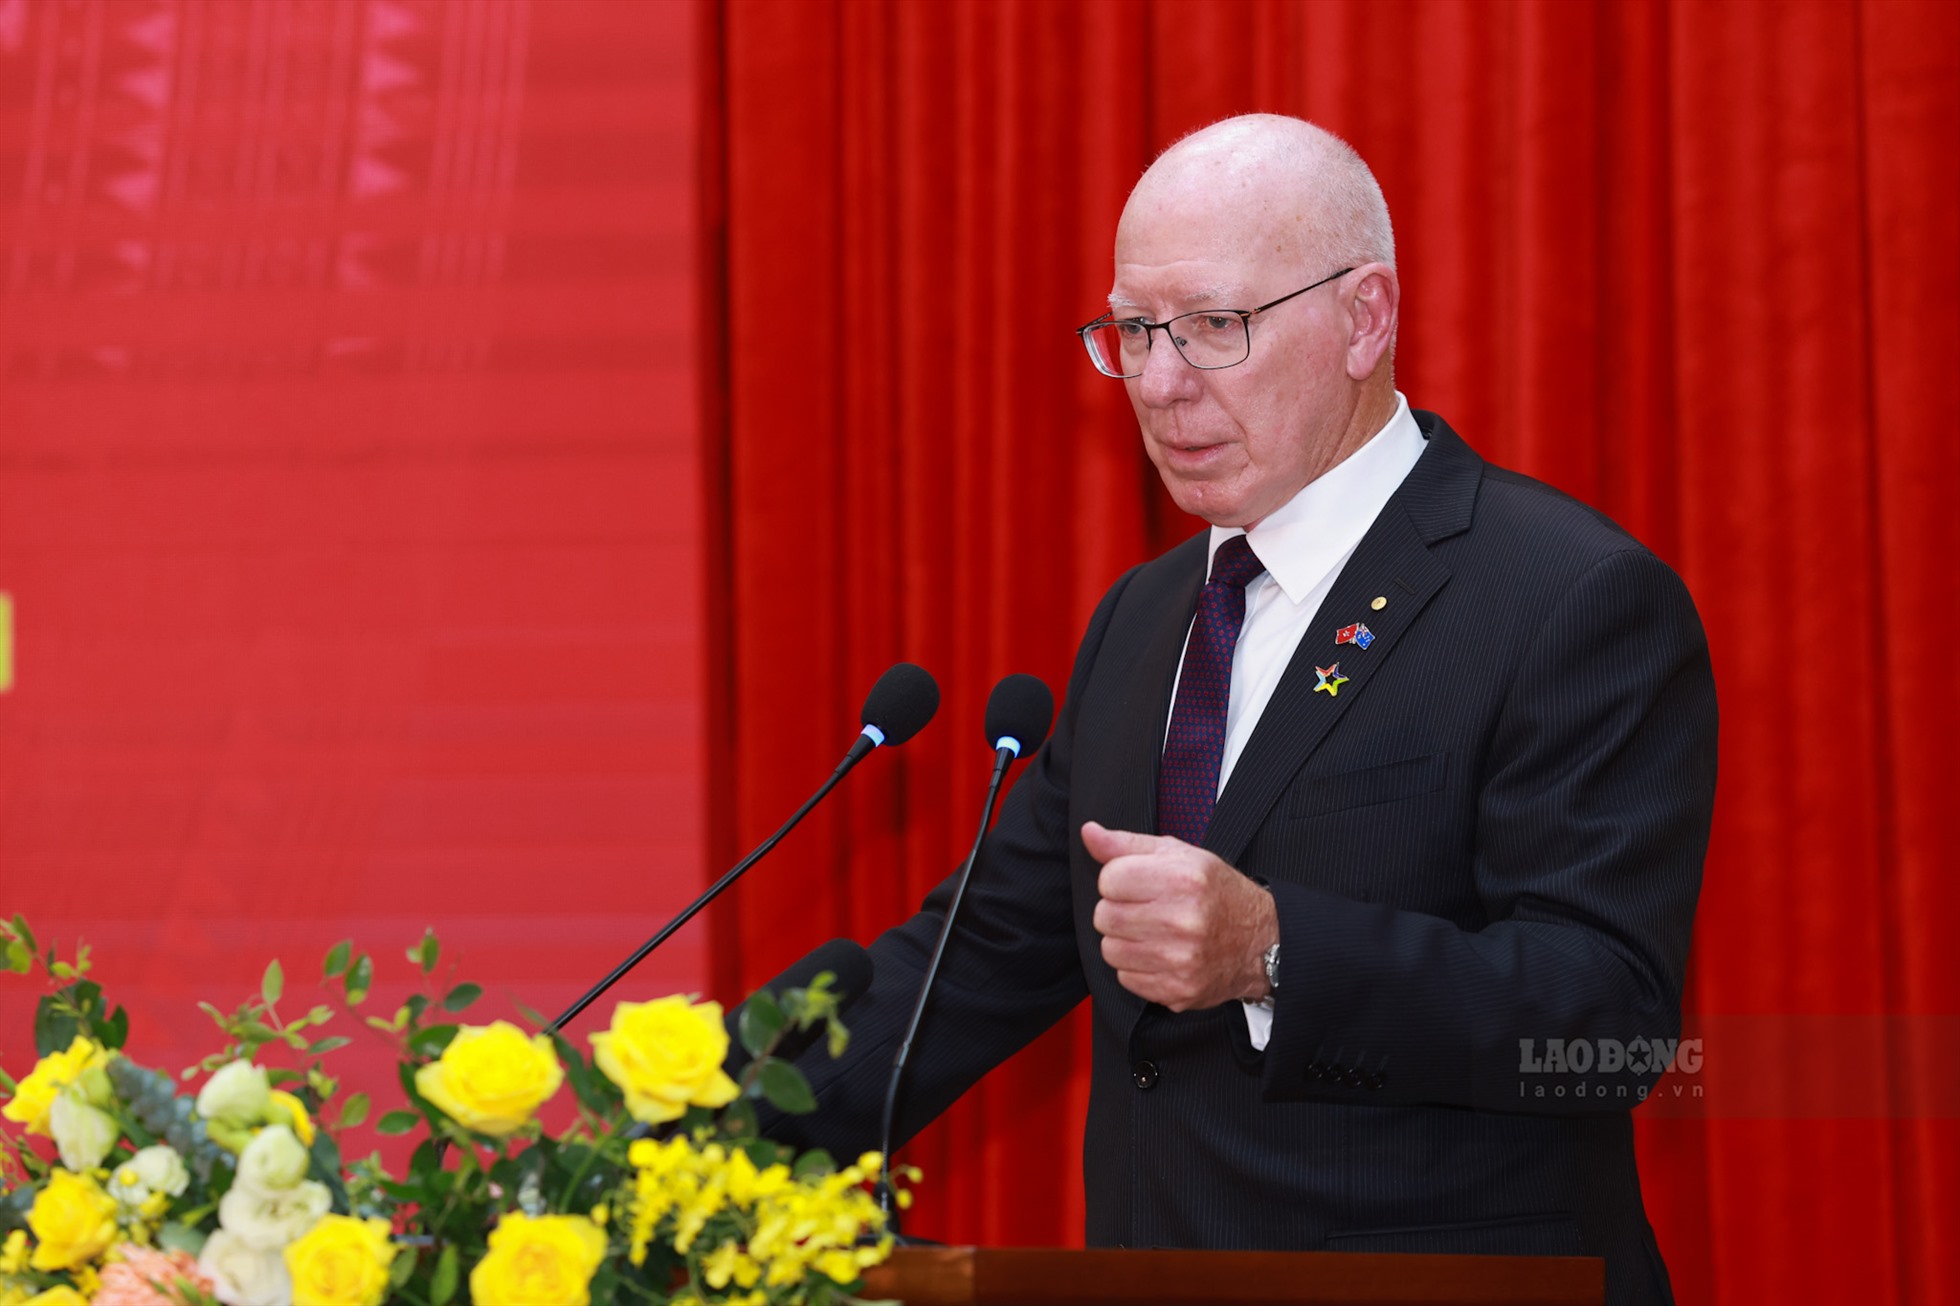 Ngài David Hurley - Toàn quyền Australia phát biểu, đánh giá cao sự hợp tác giữa Việt Nam và Australia trong thời gian vừa qua. Ảnh: Hải Nguyễn